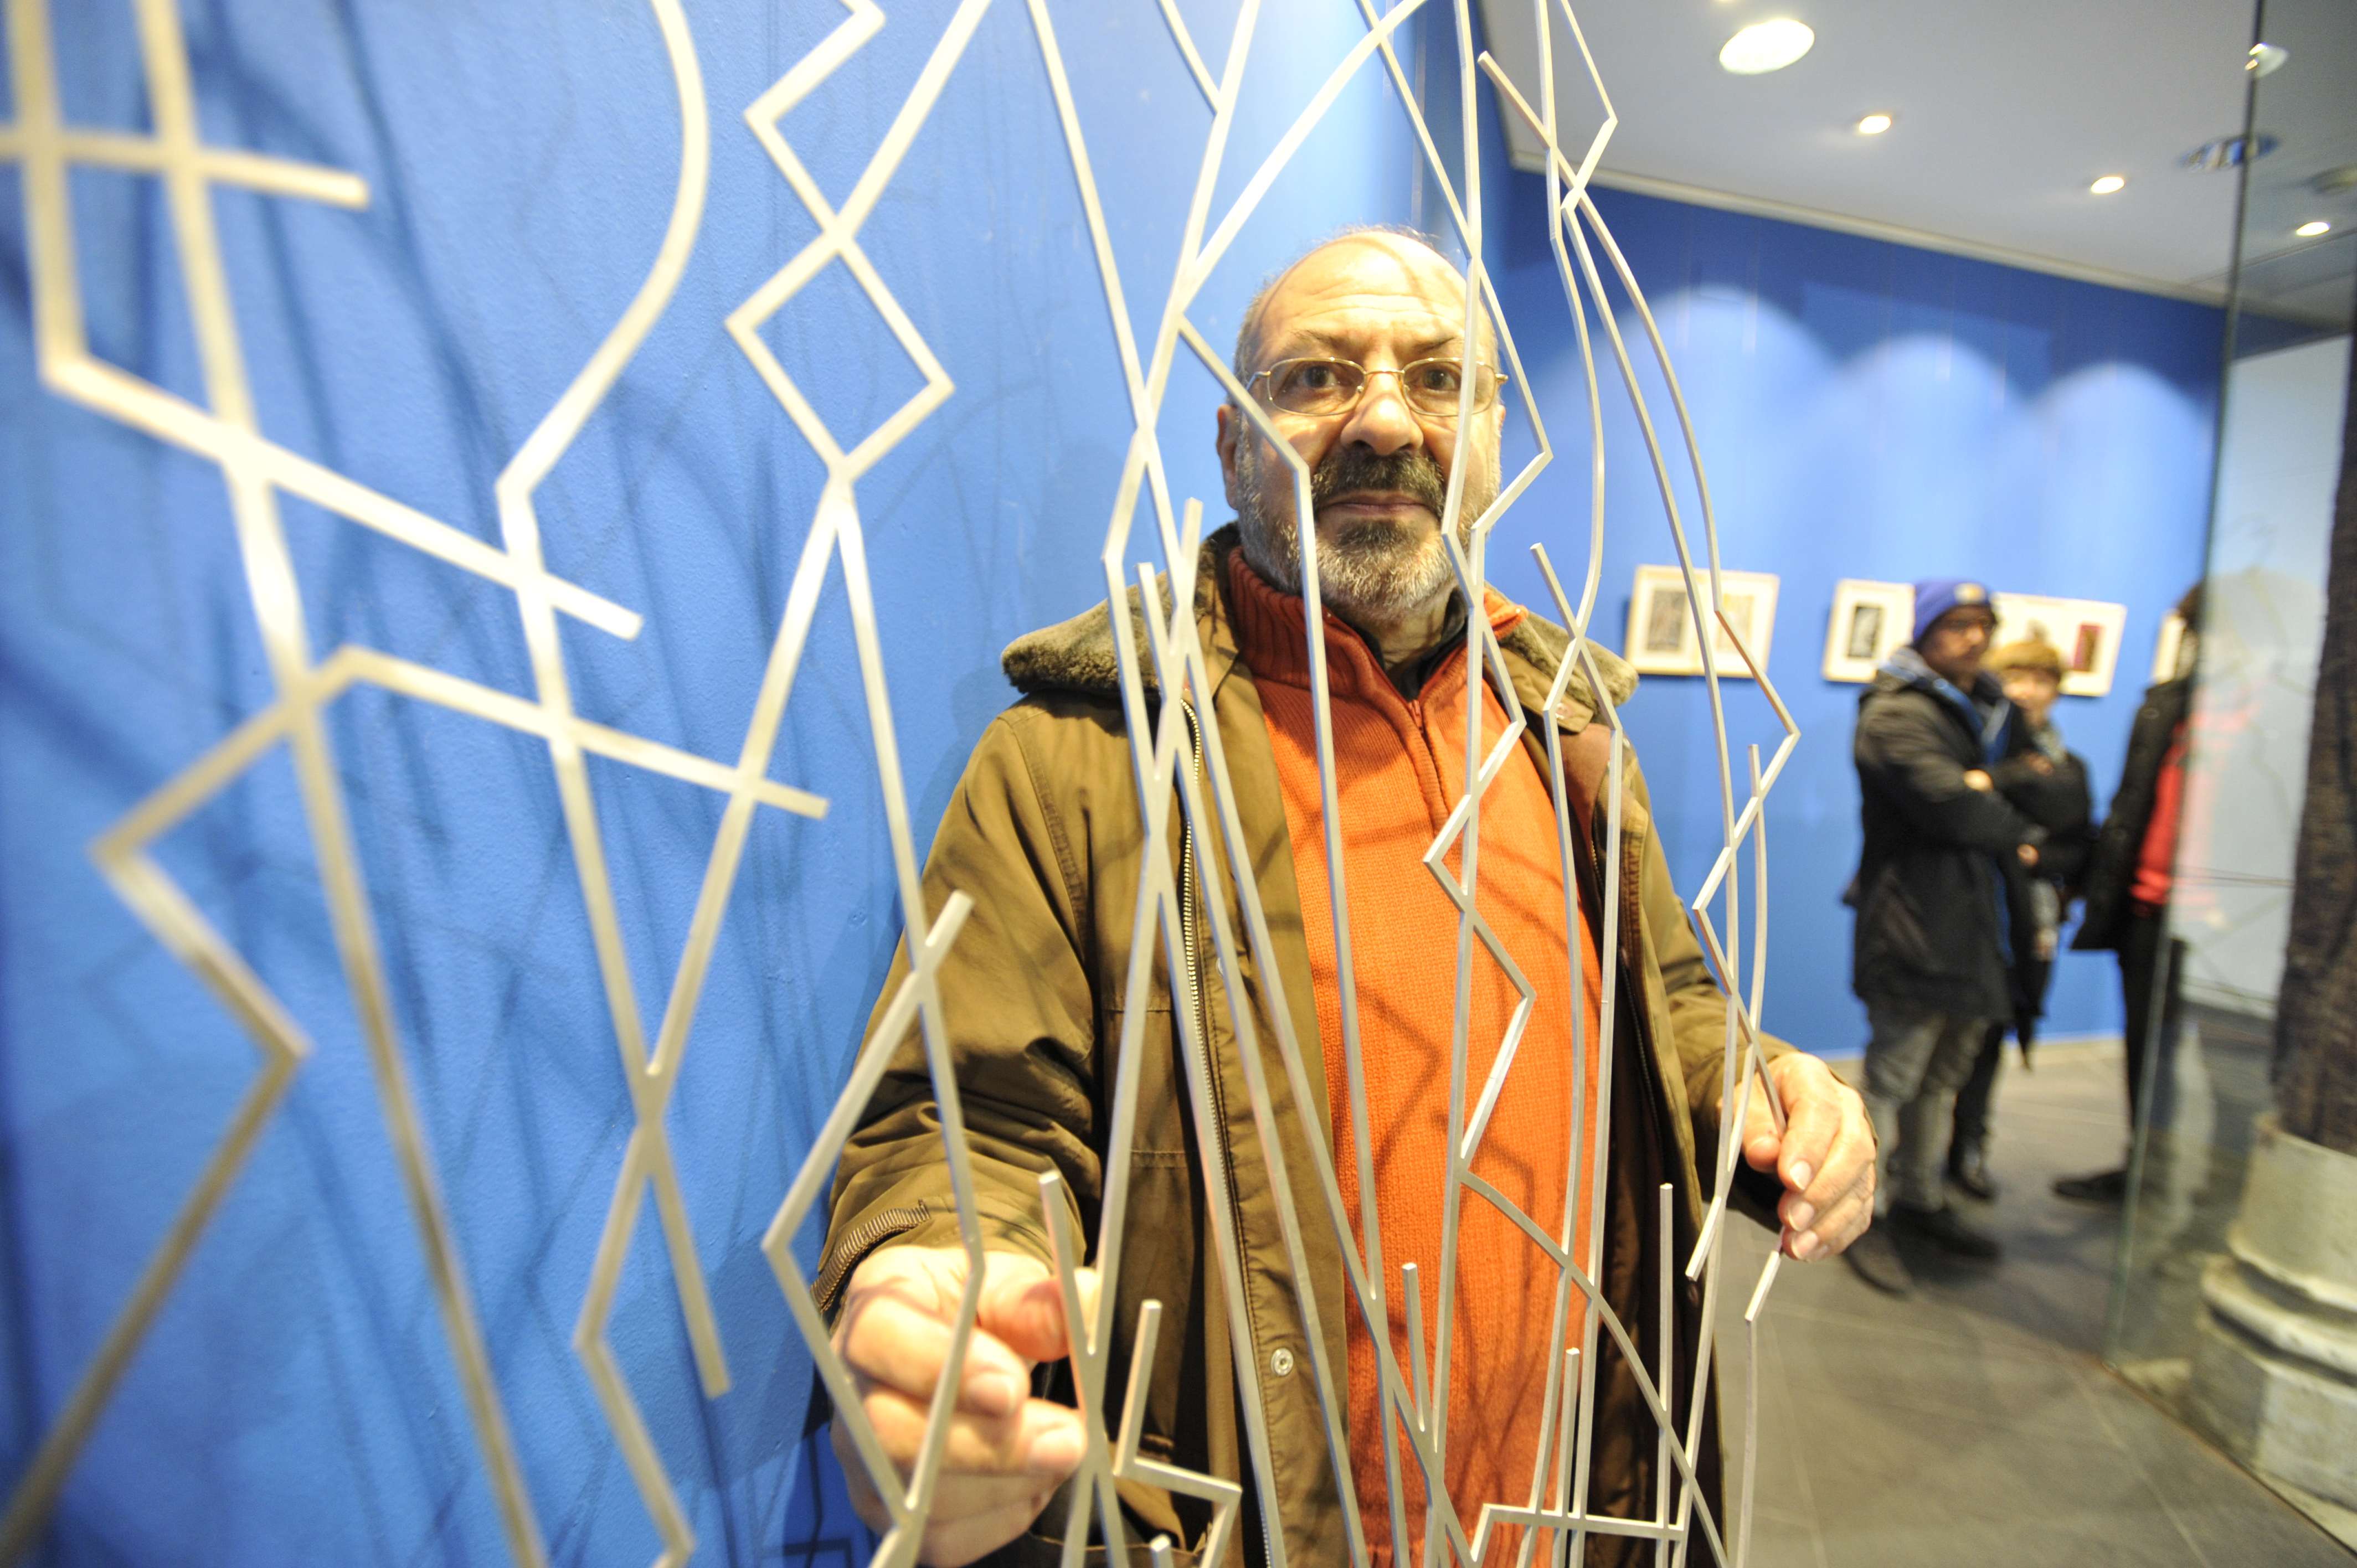 El artista leonés Esteban Tranche expone en Cuca La Vaina. | DANIEL MARTÍN